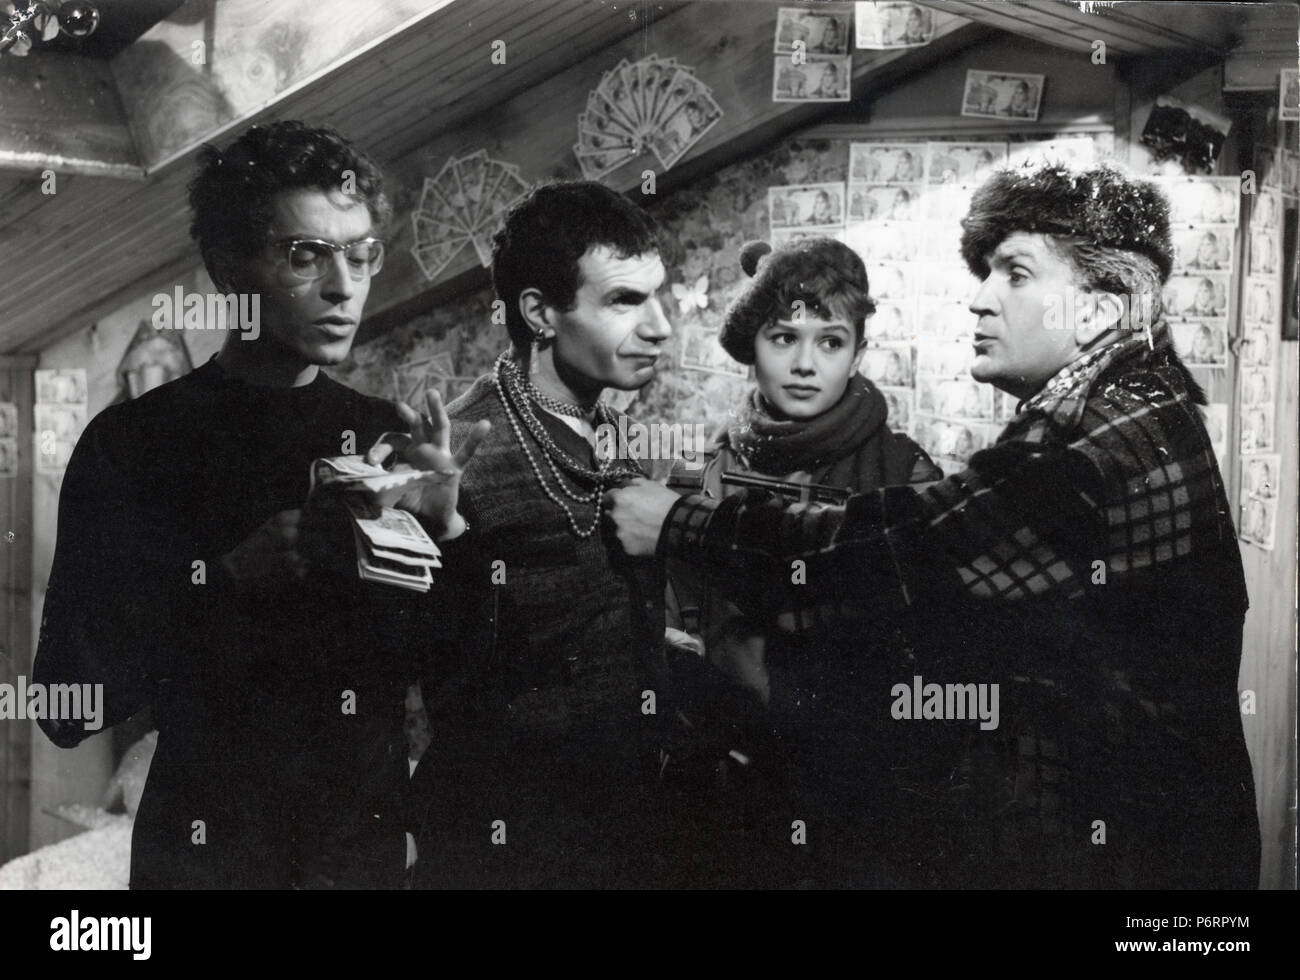 Chéri, fais-moi peur  Year: 1958 - France Darry Cowl, Sophie Daumier, Pierre Mondy, Jacques Dufilho  Director: Jacques Pinoteau Stock Photo